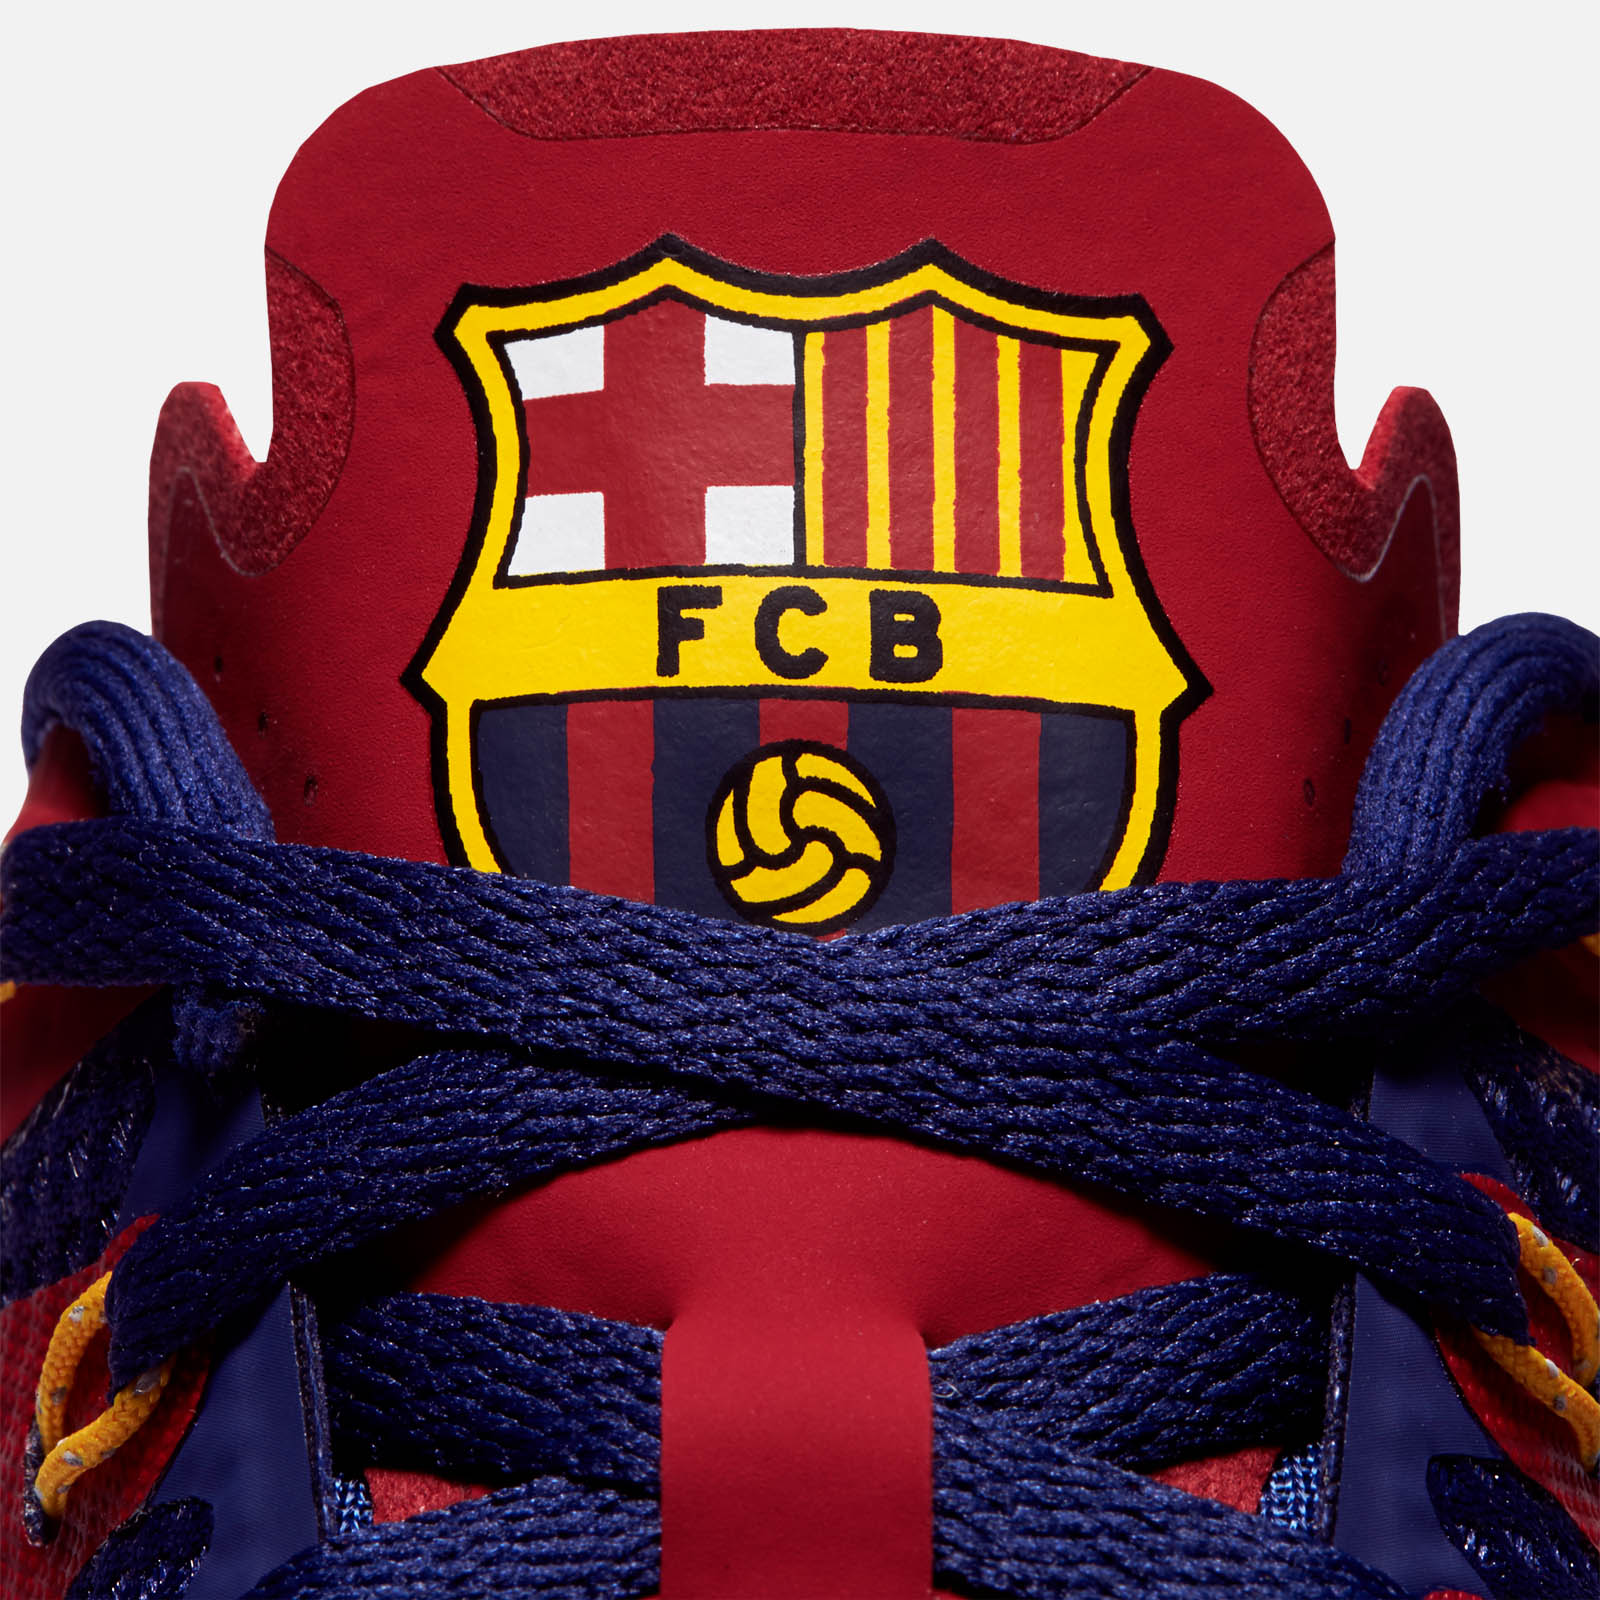 fc barcelona nike shoes